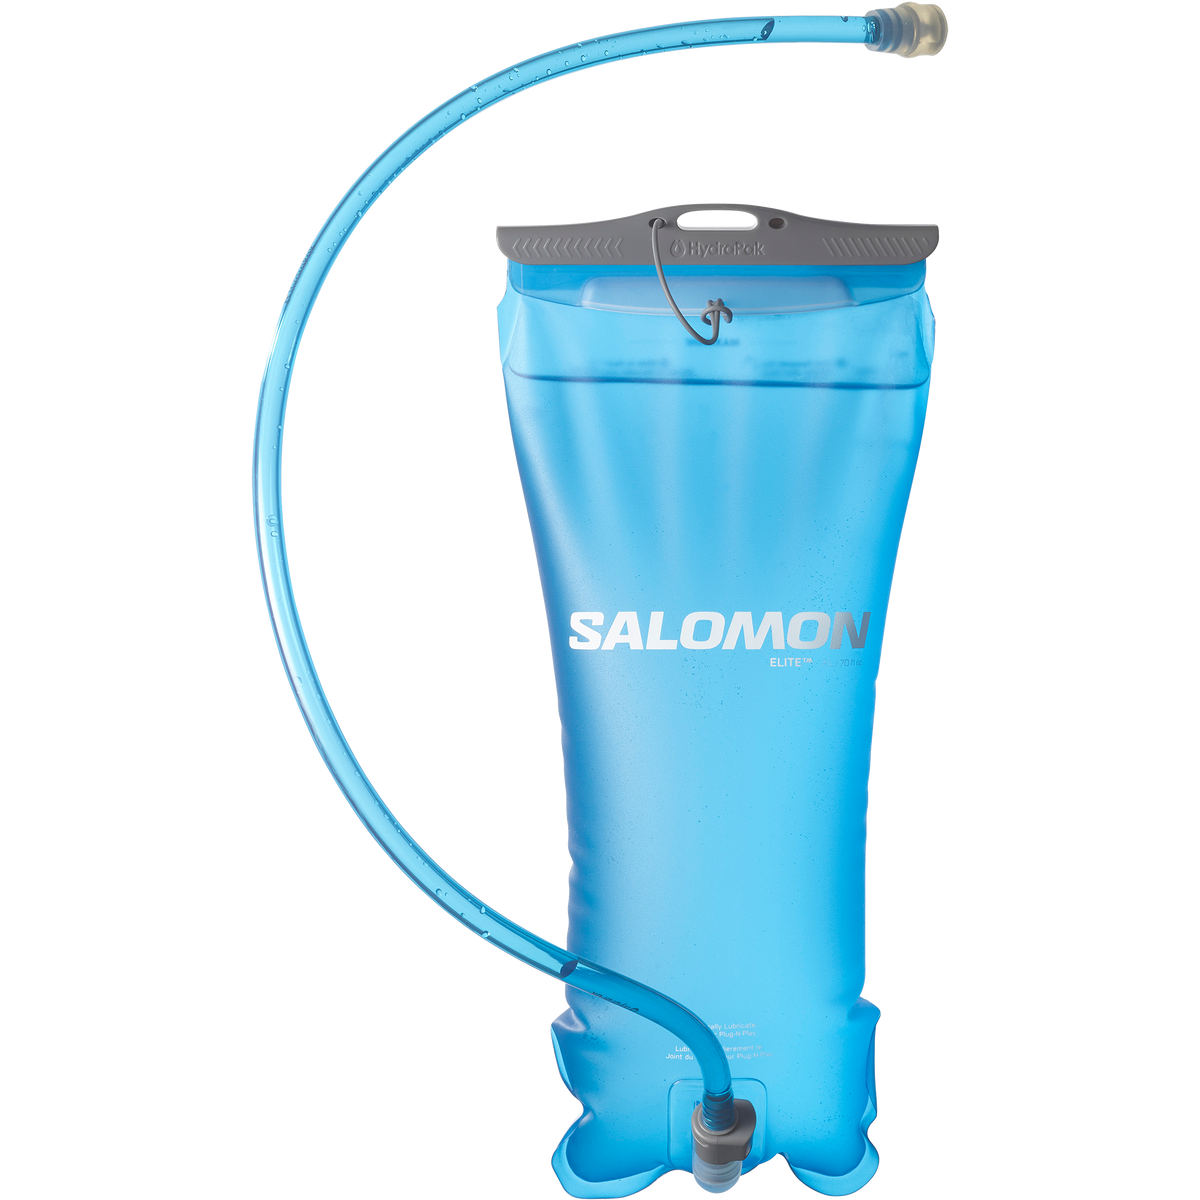 Salomon Soft Reservoir 2L Elite HYDRATION - Bottles and Flasks CLEAR BLUE